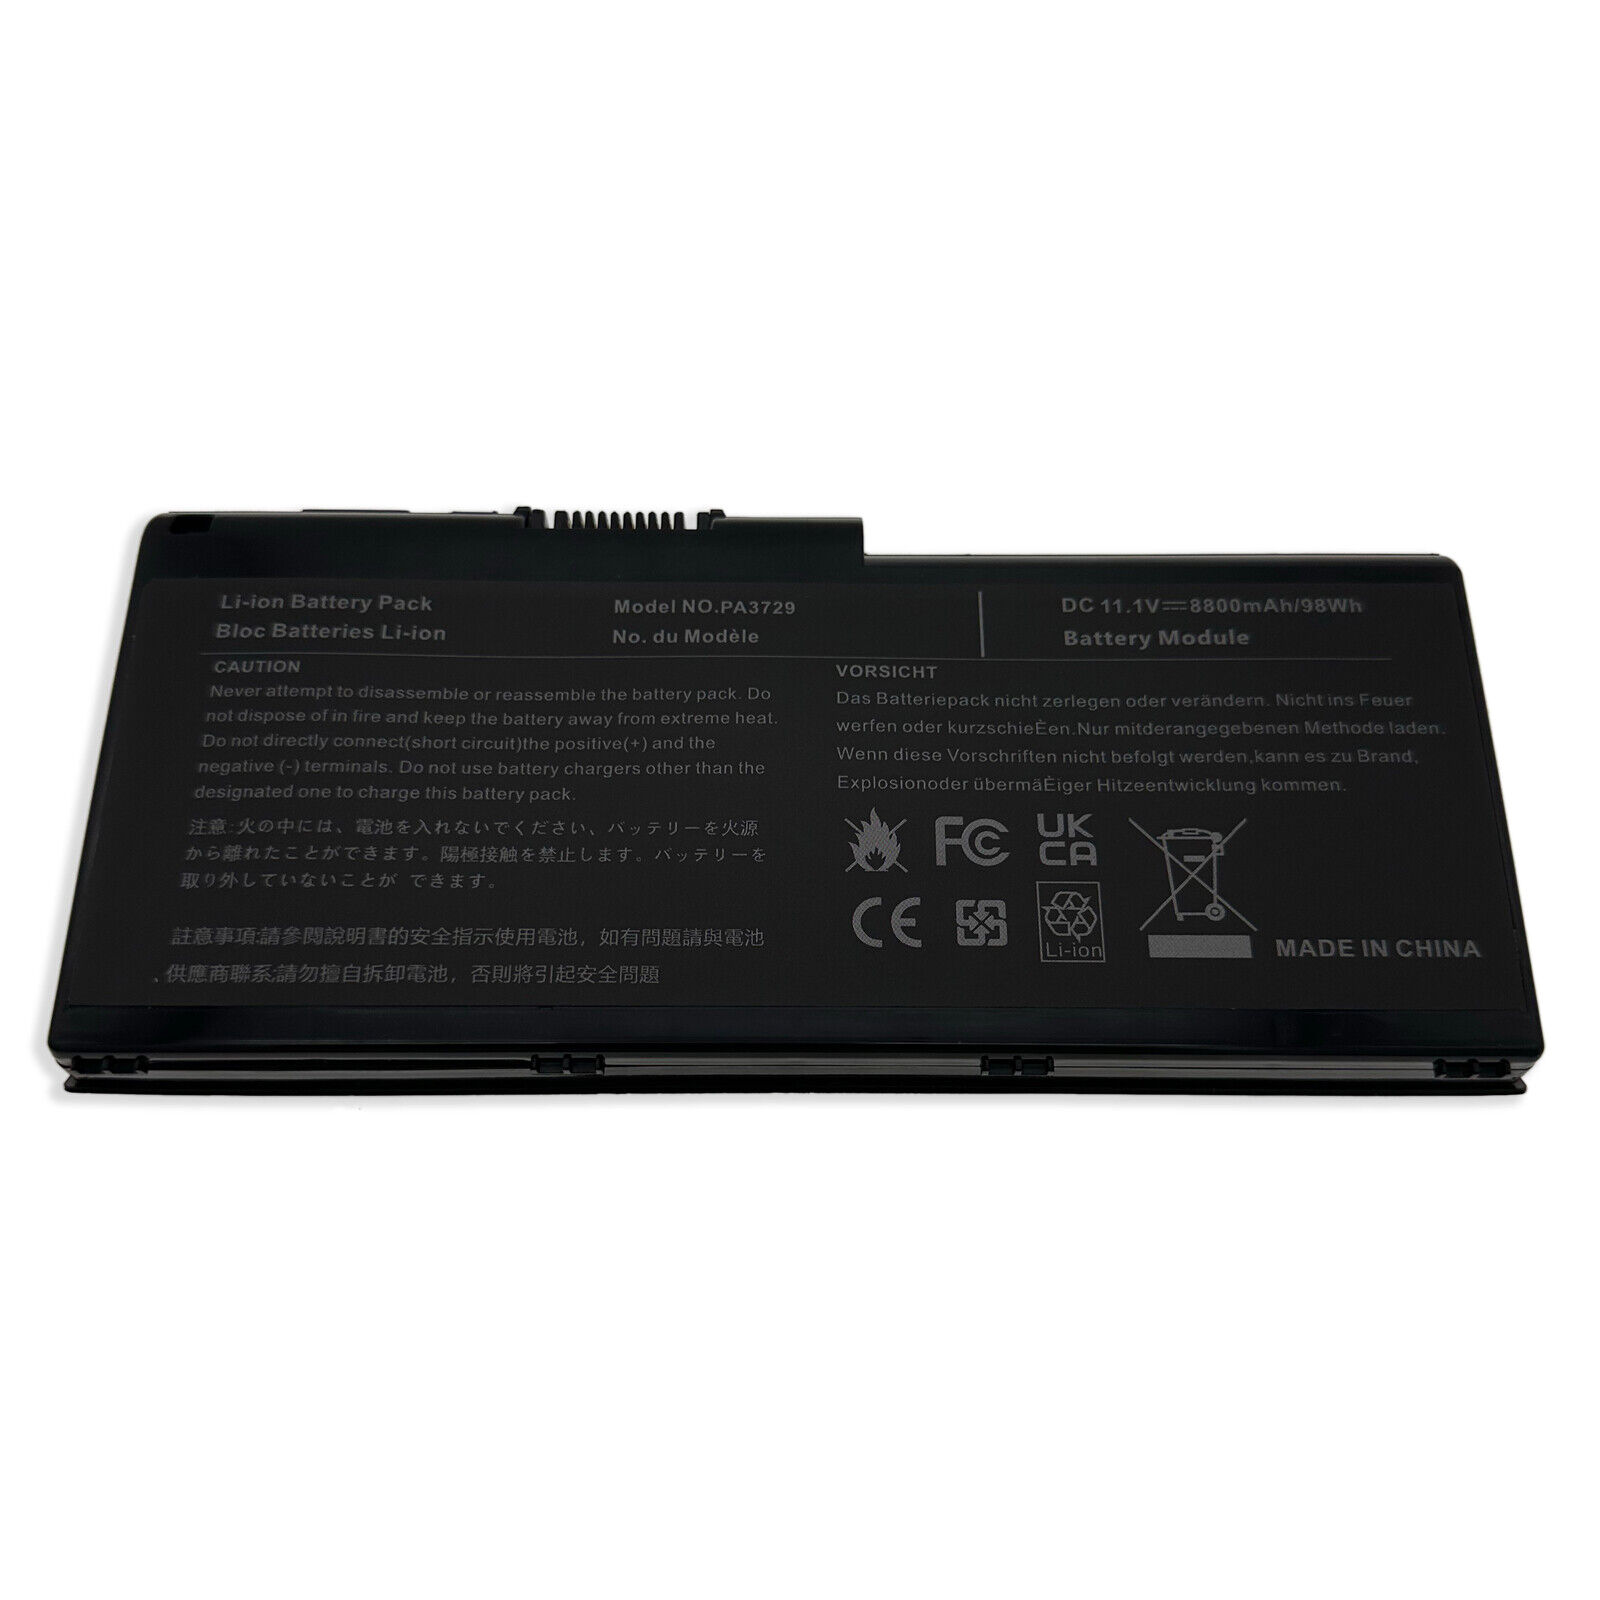 12 CELL Battery for Toshiba Qosmio X500 X505 Laptop PA3730U-1BRS PA3730U-1BAS